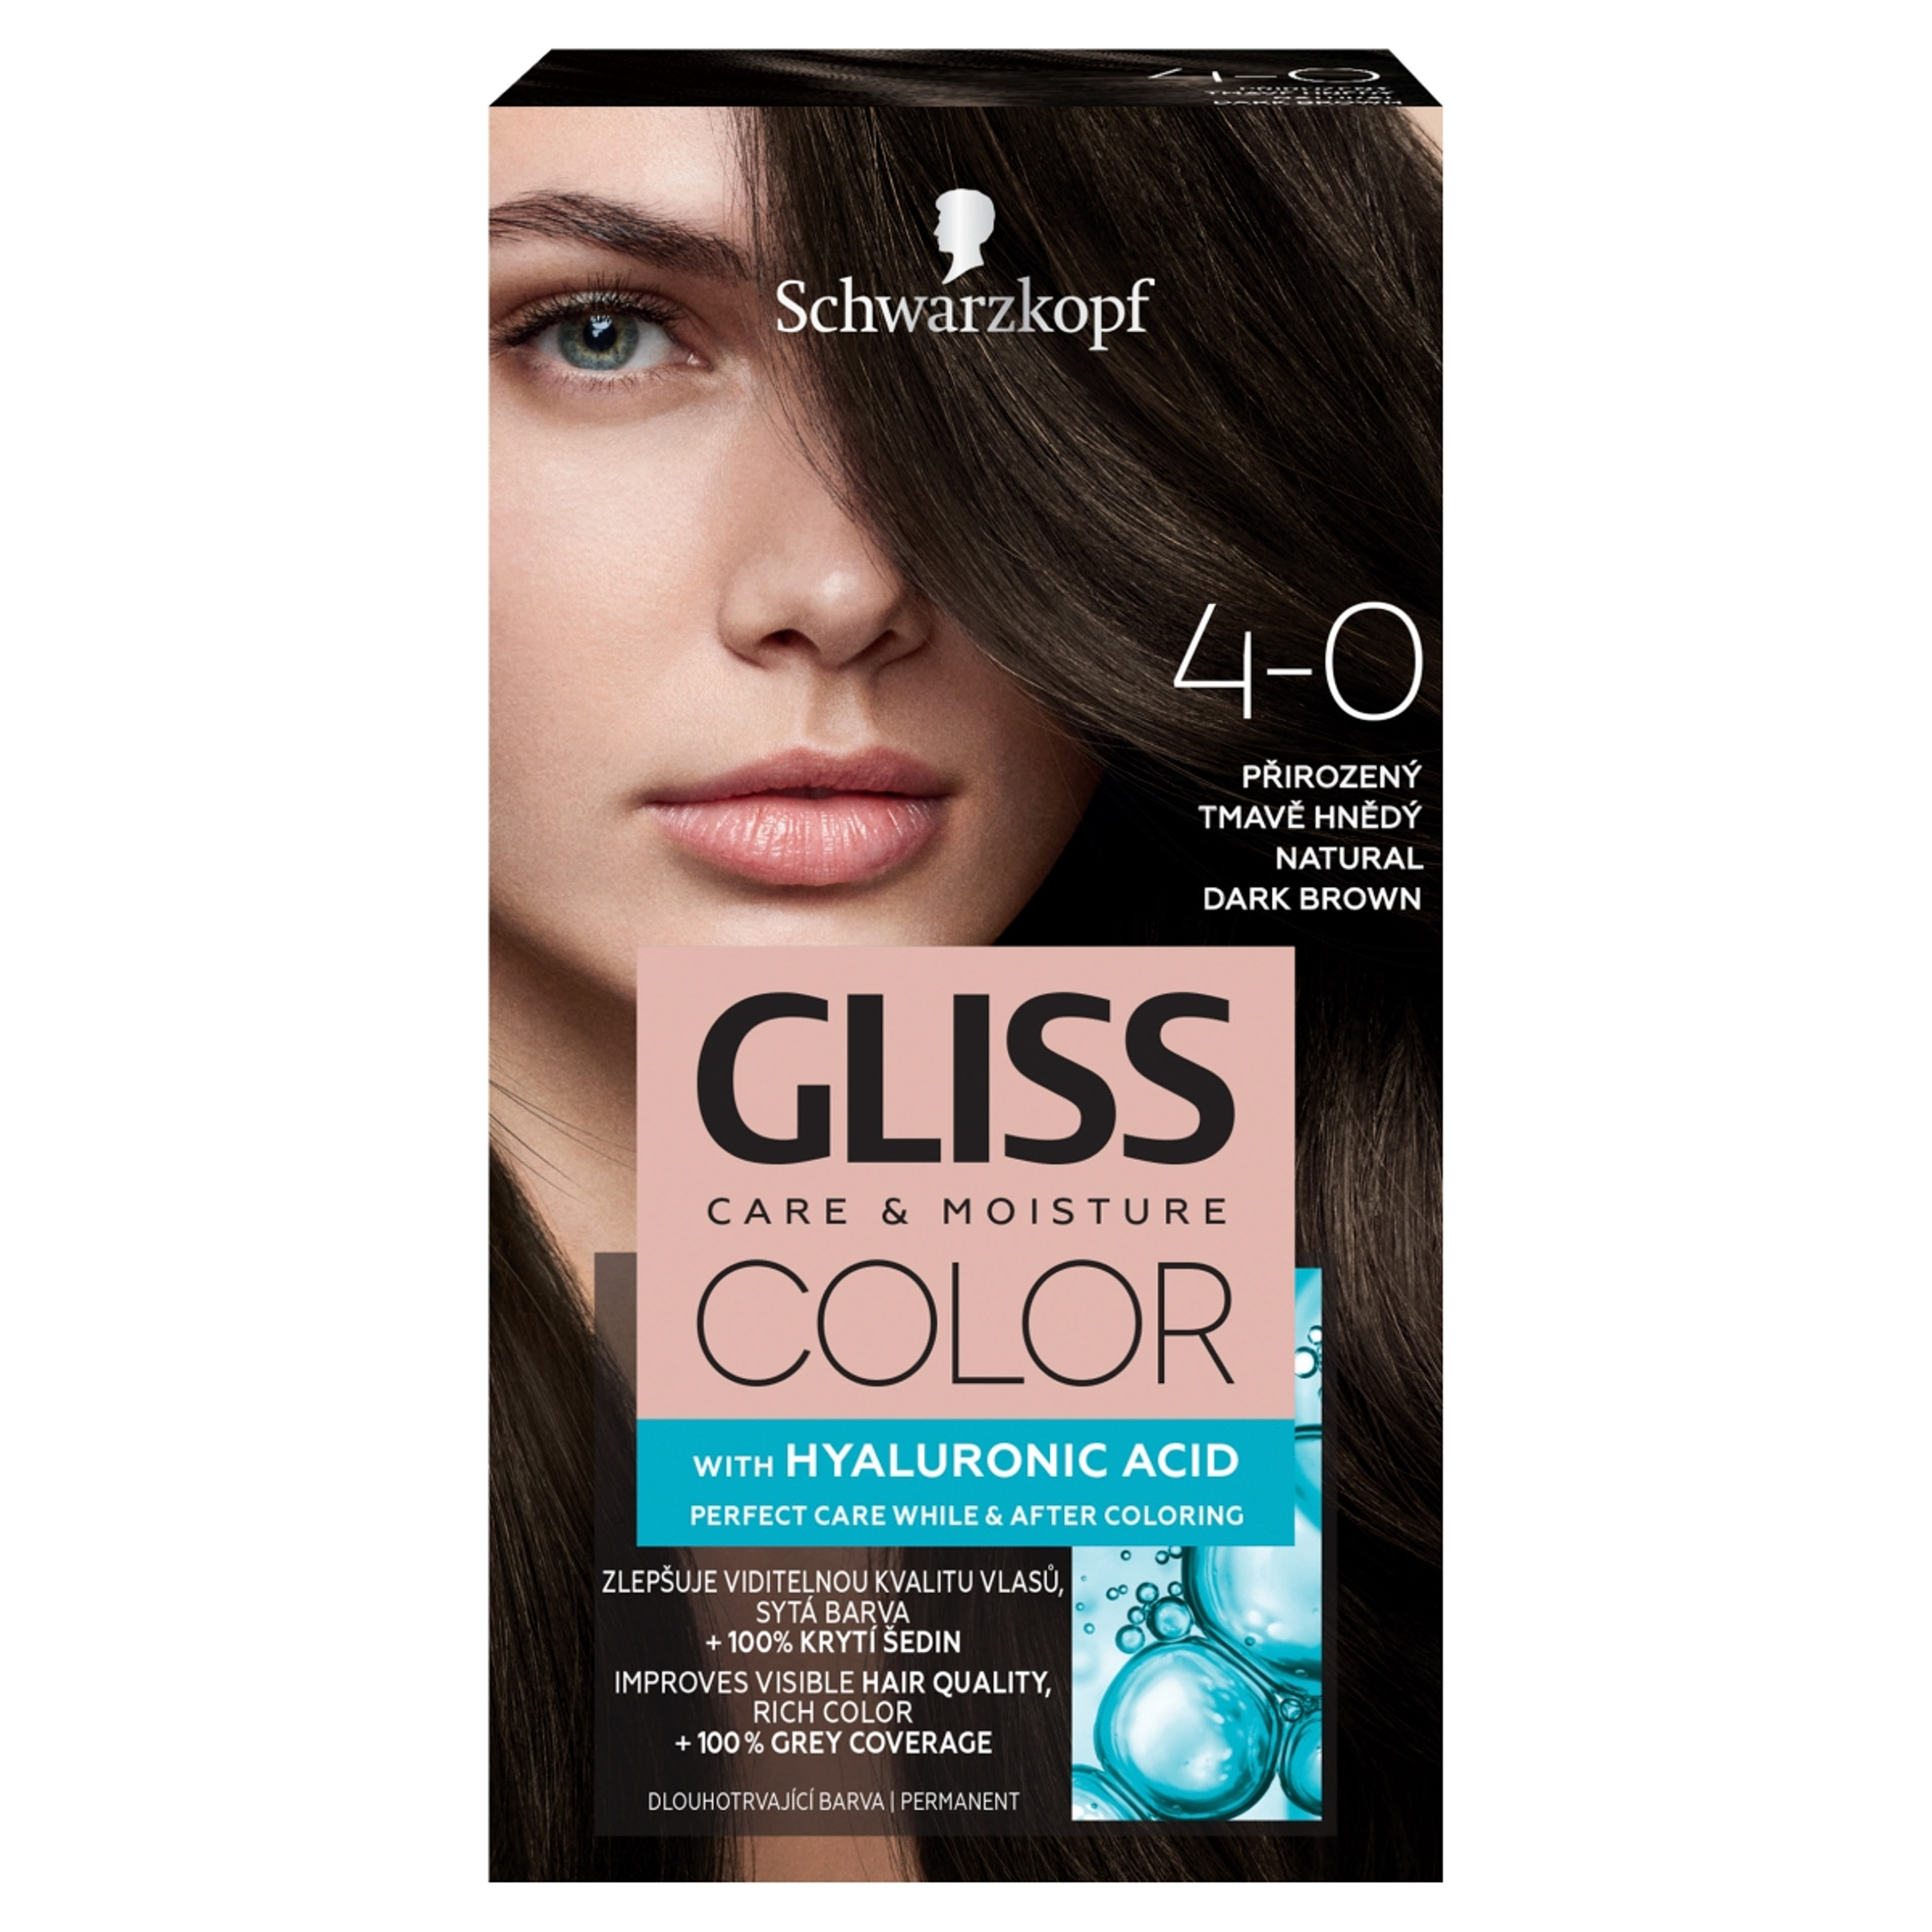 Gliss Color tartós hajfesték 4-0 Természetes sötétbarna - 1 db-1